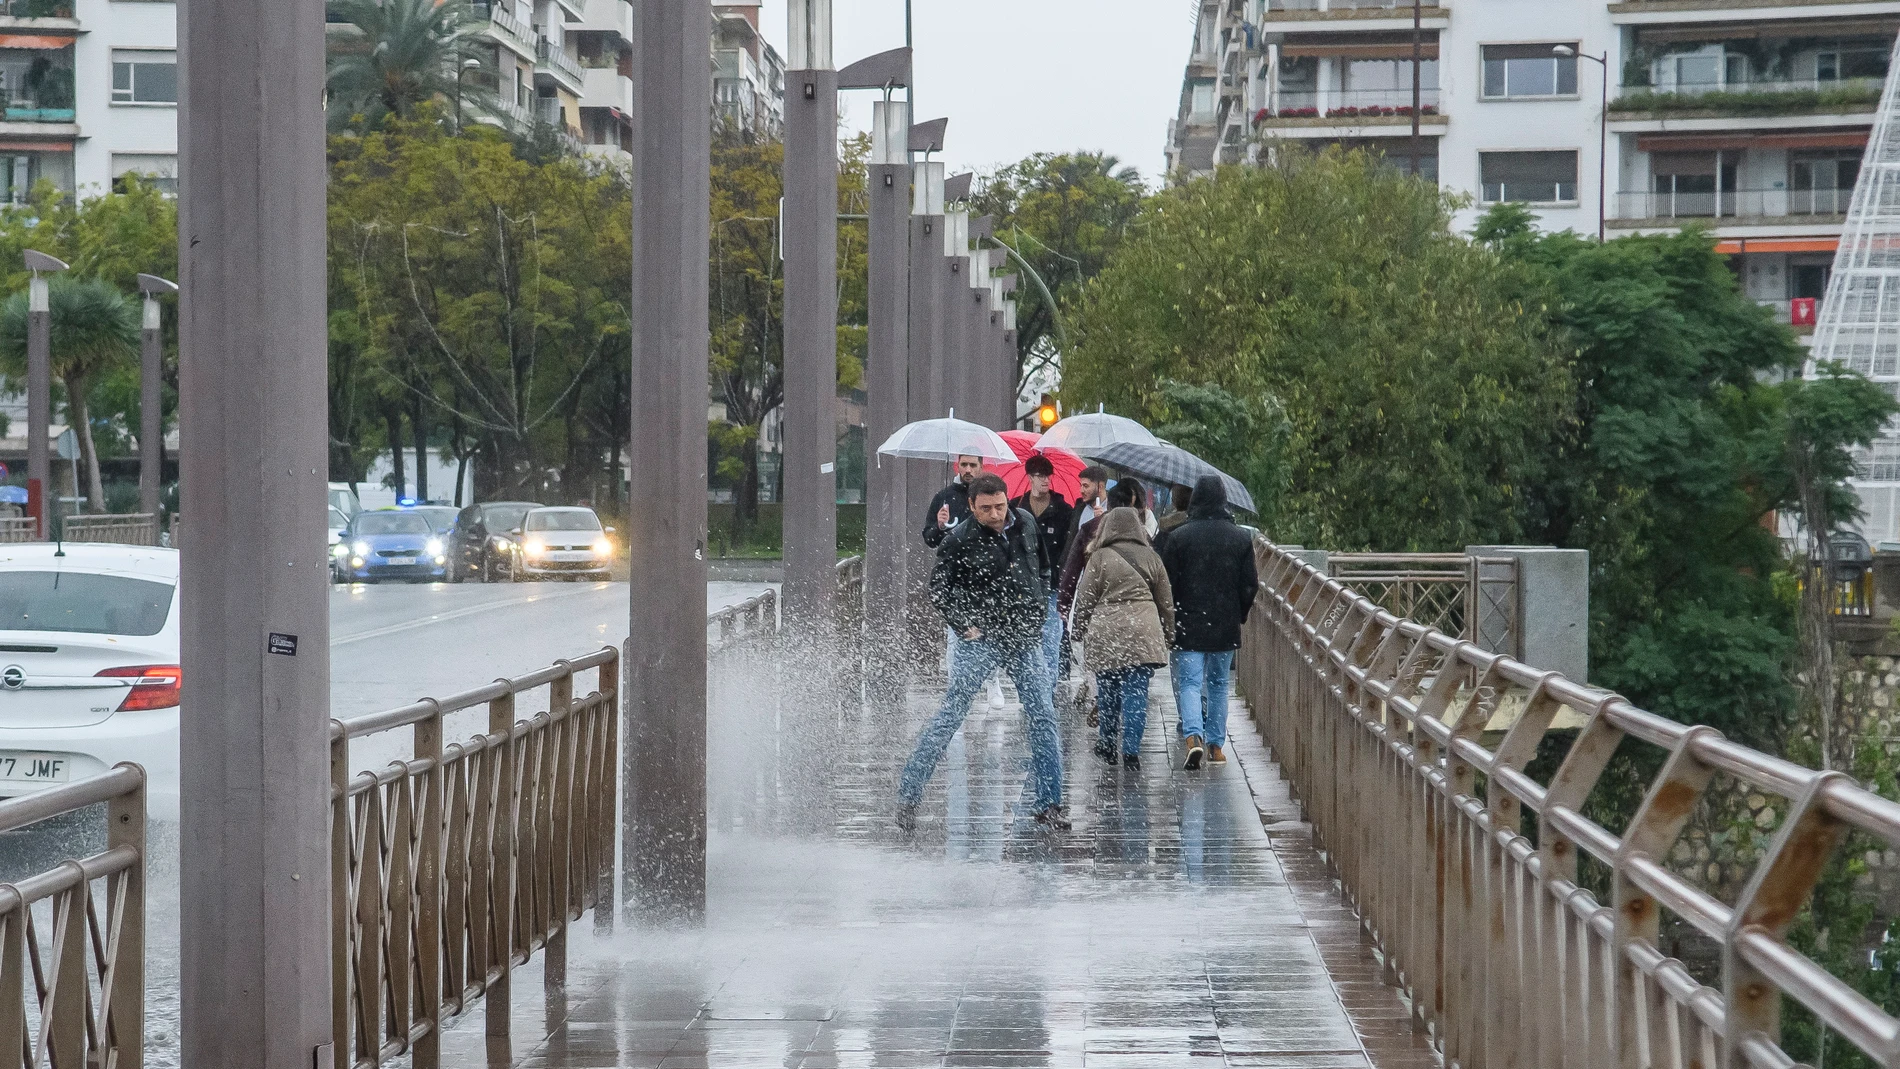 El temporal trae a Sevilla intensas precipitaciones que continuaran toda la semana